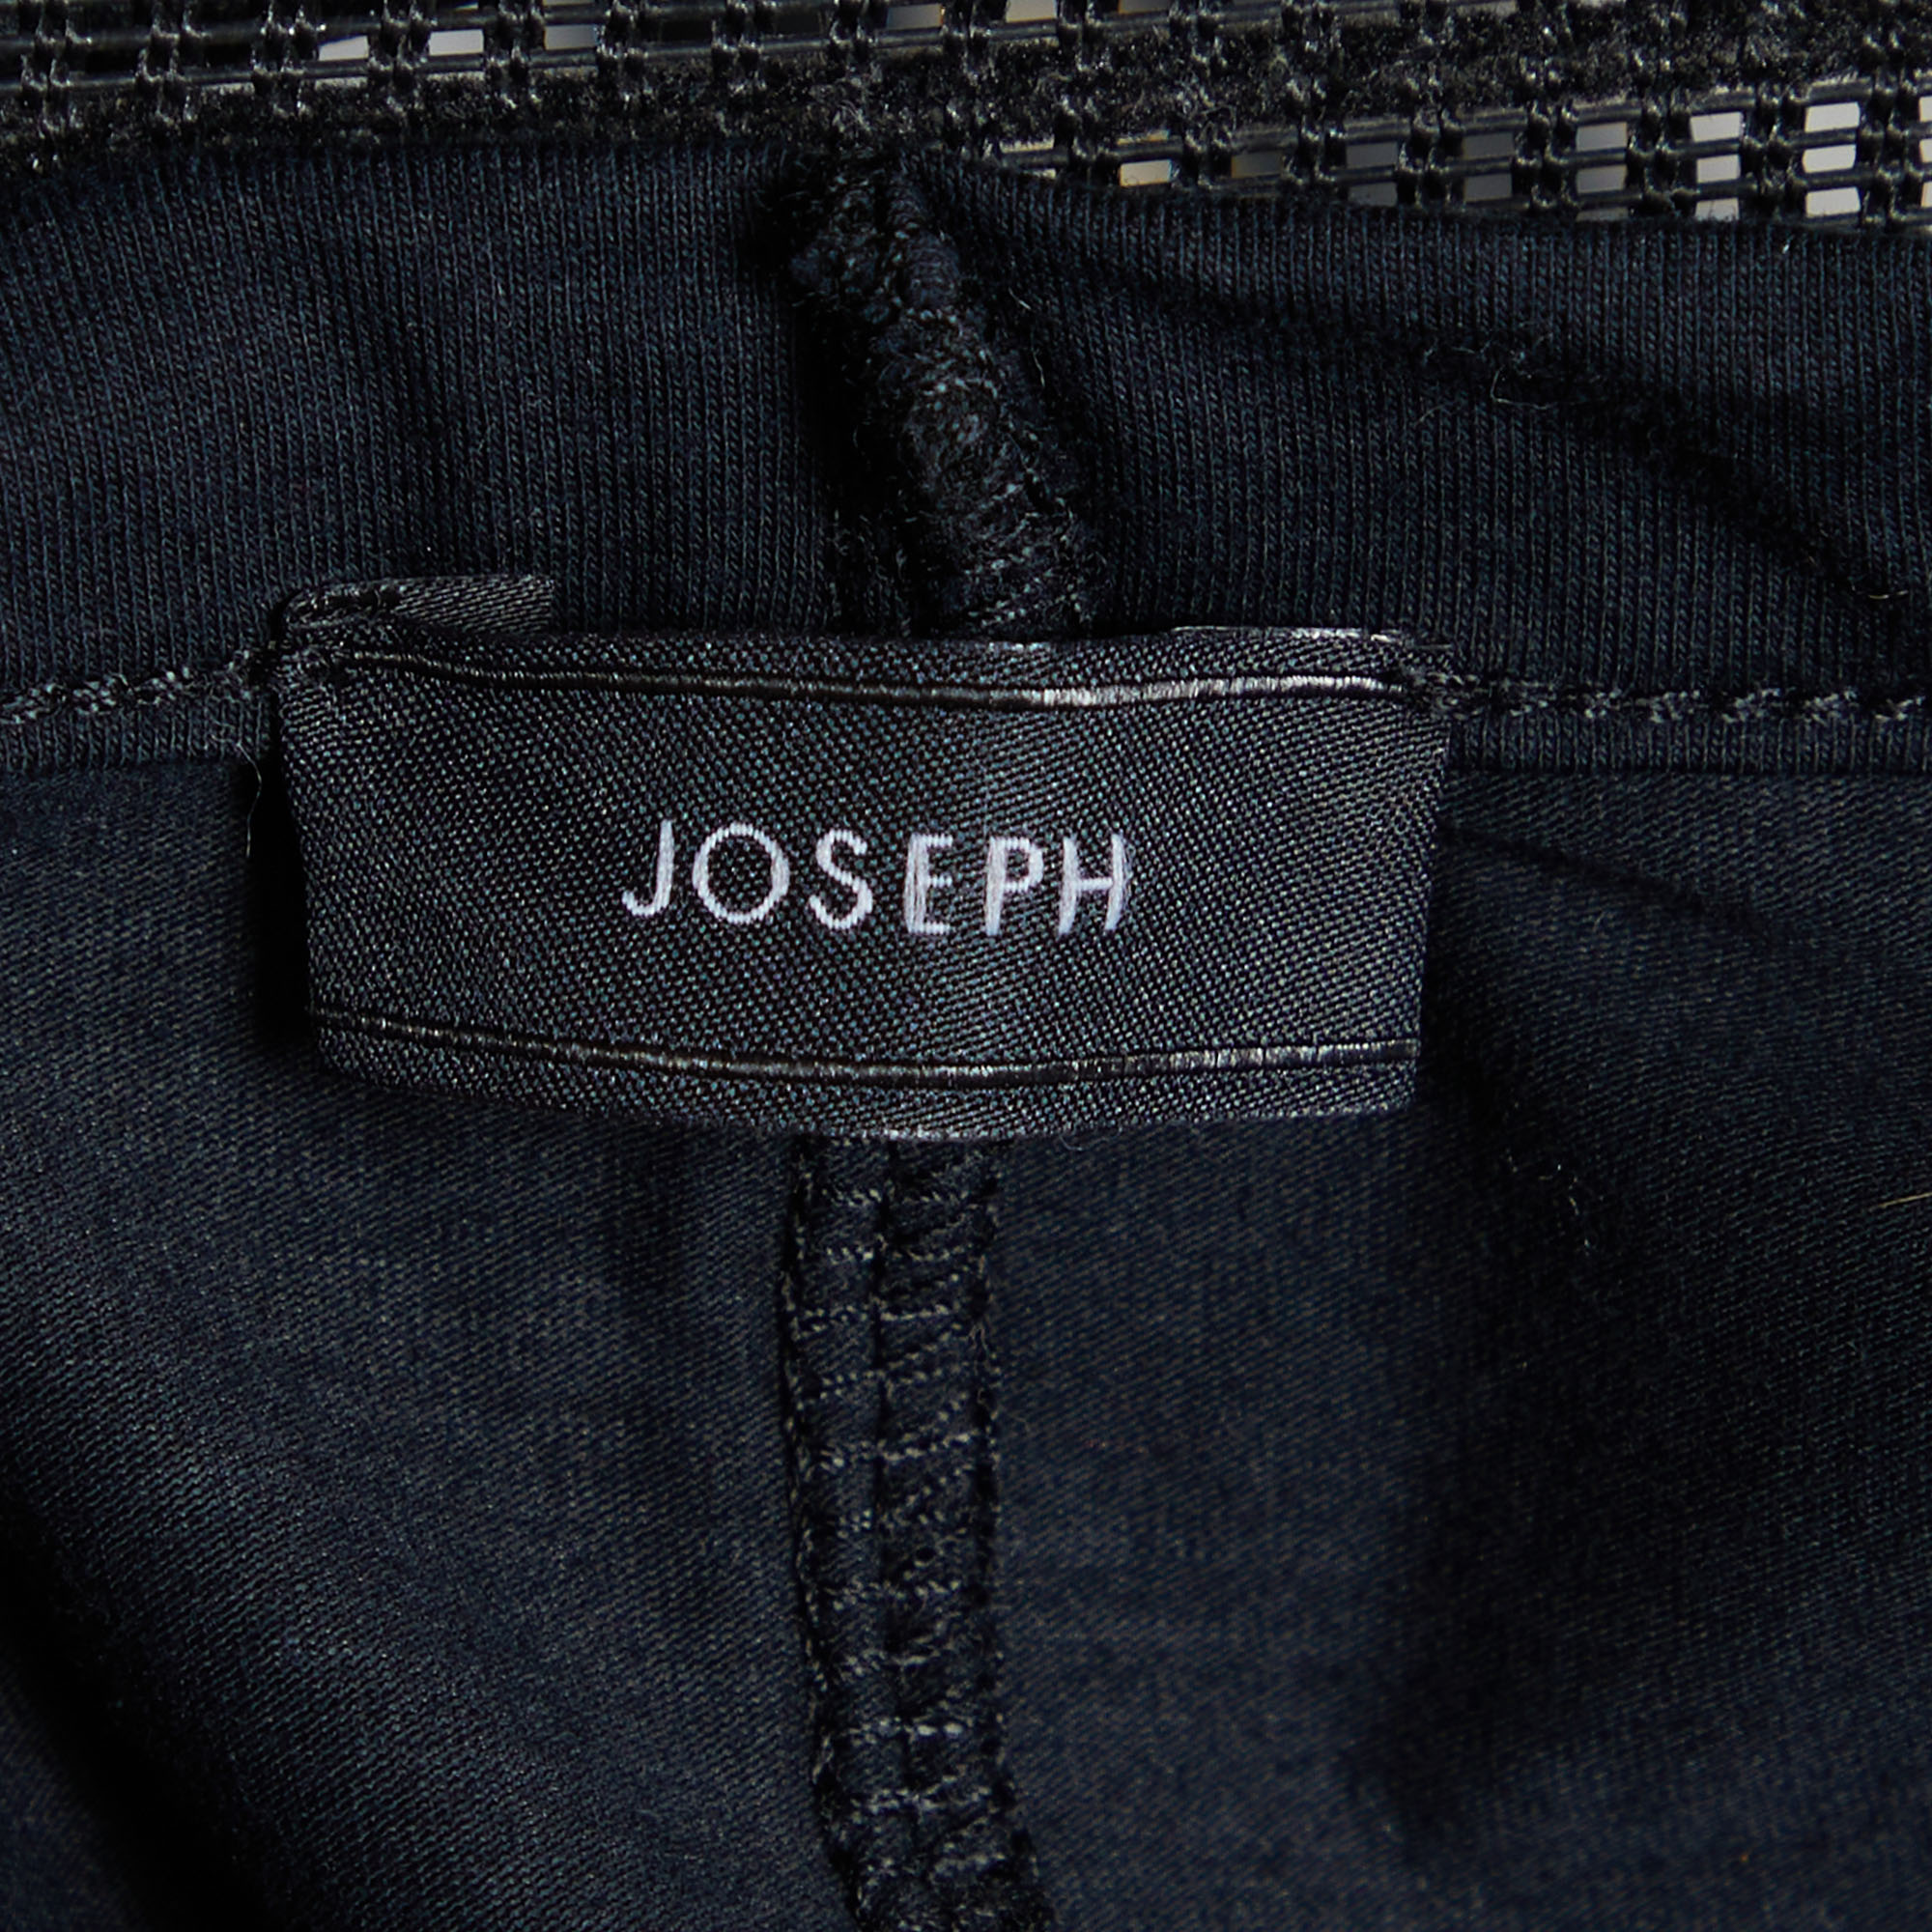 Joseph Black Cotton Knit V-Neck T-Shirt S